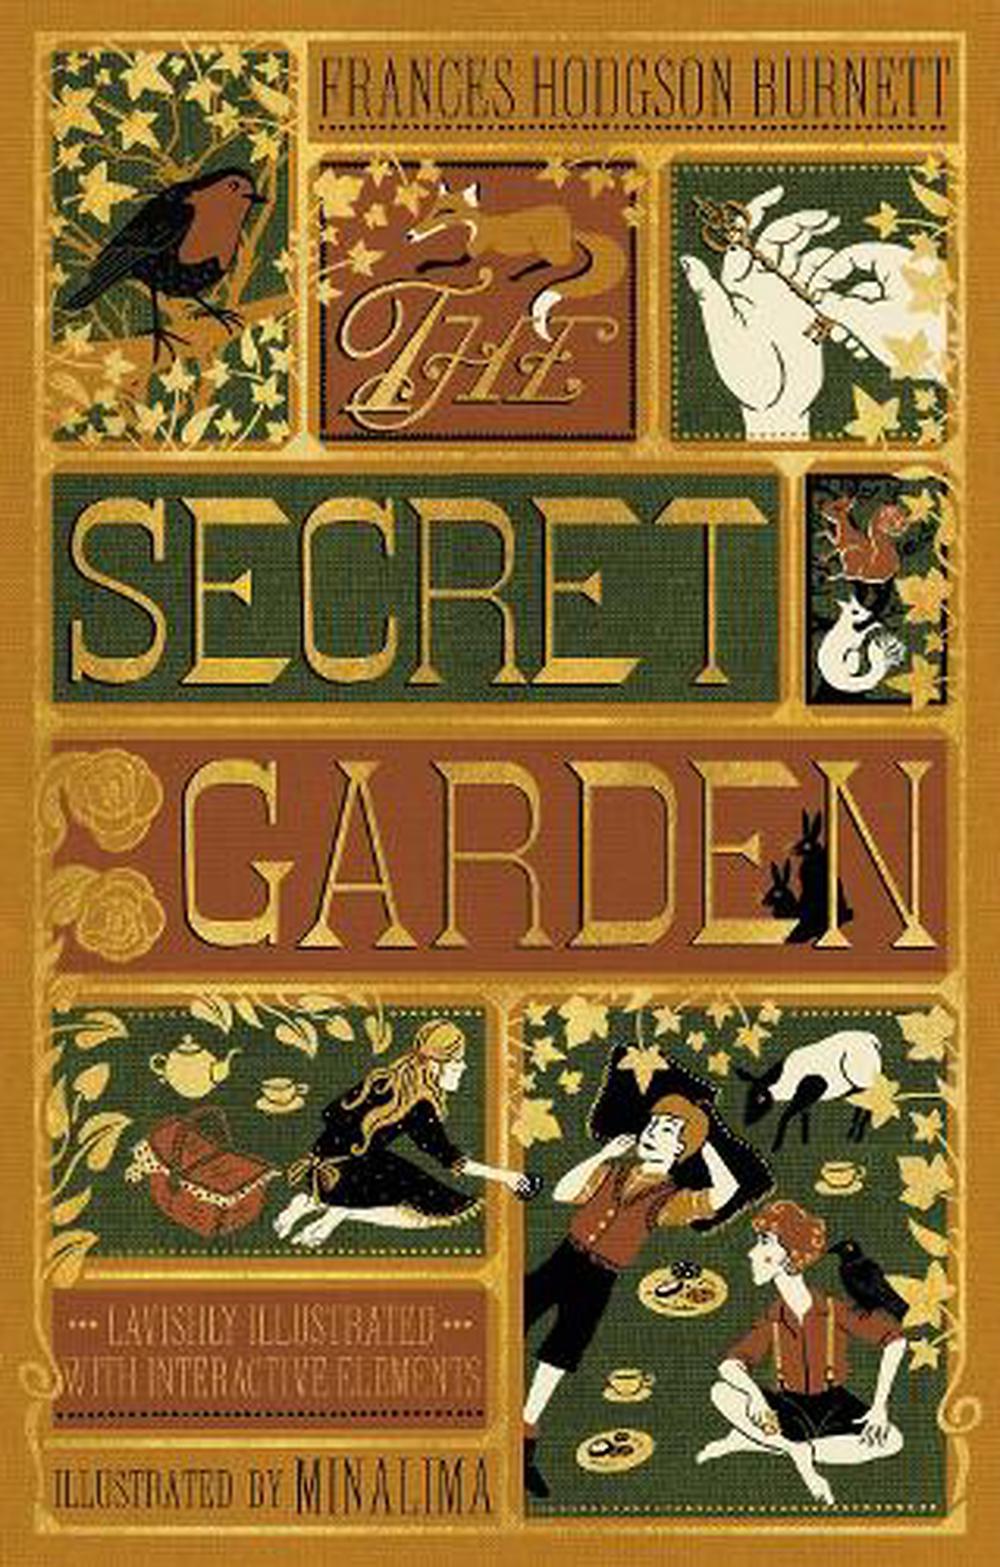 the secret garden burnett